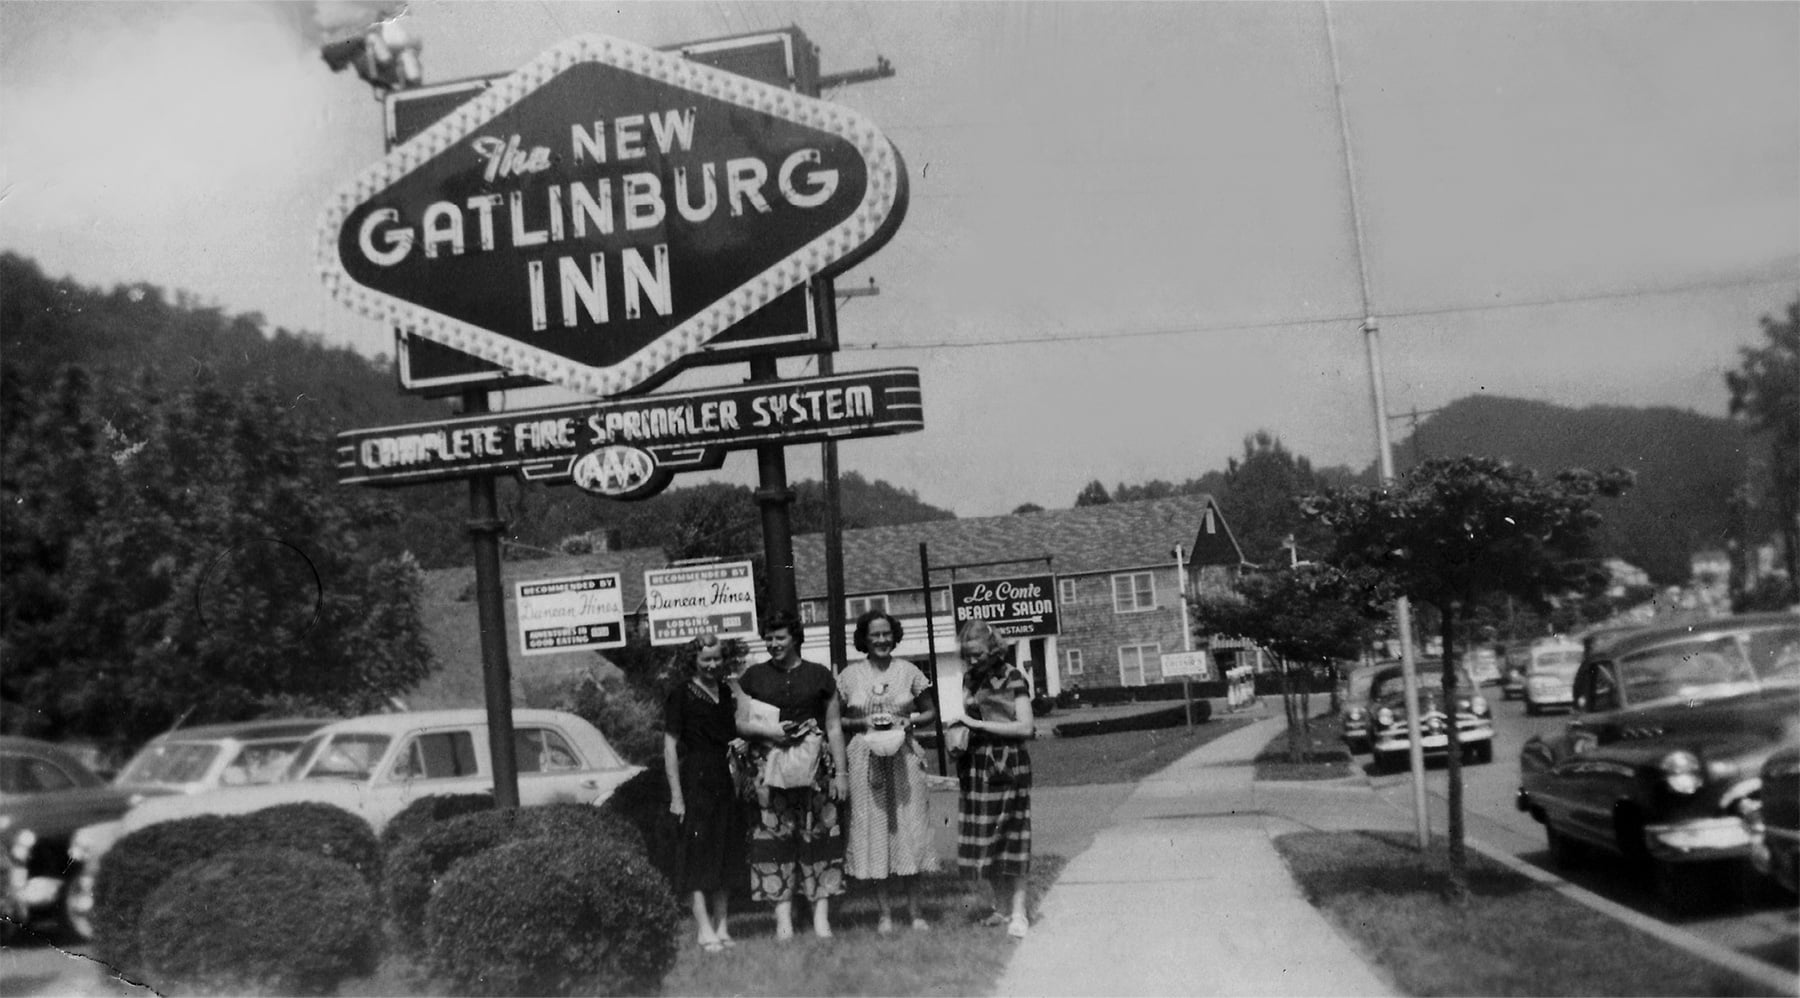 The New Gatlinburg Inn